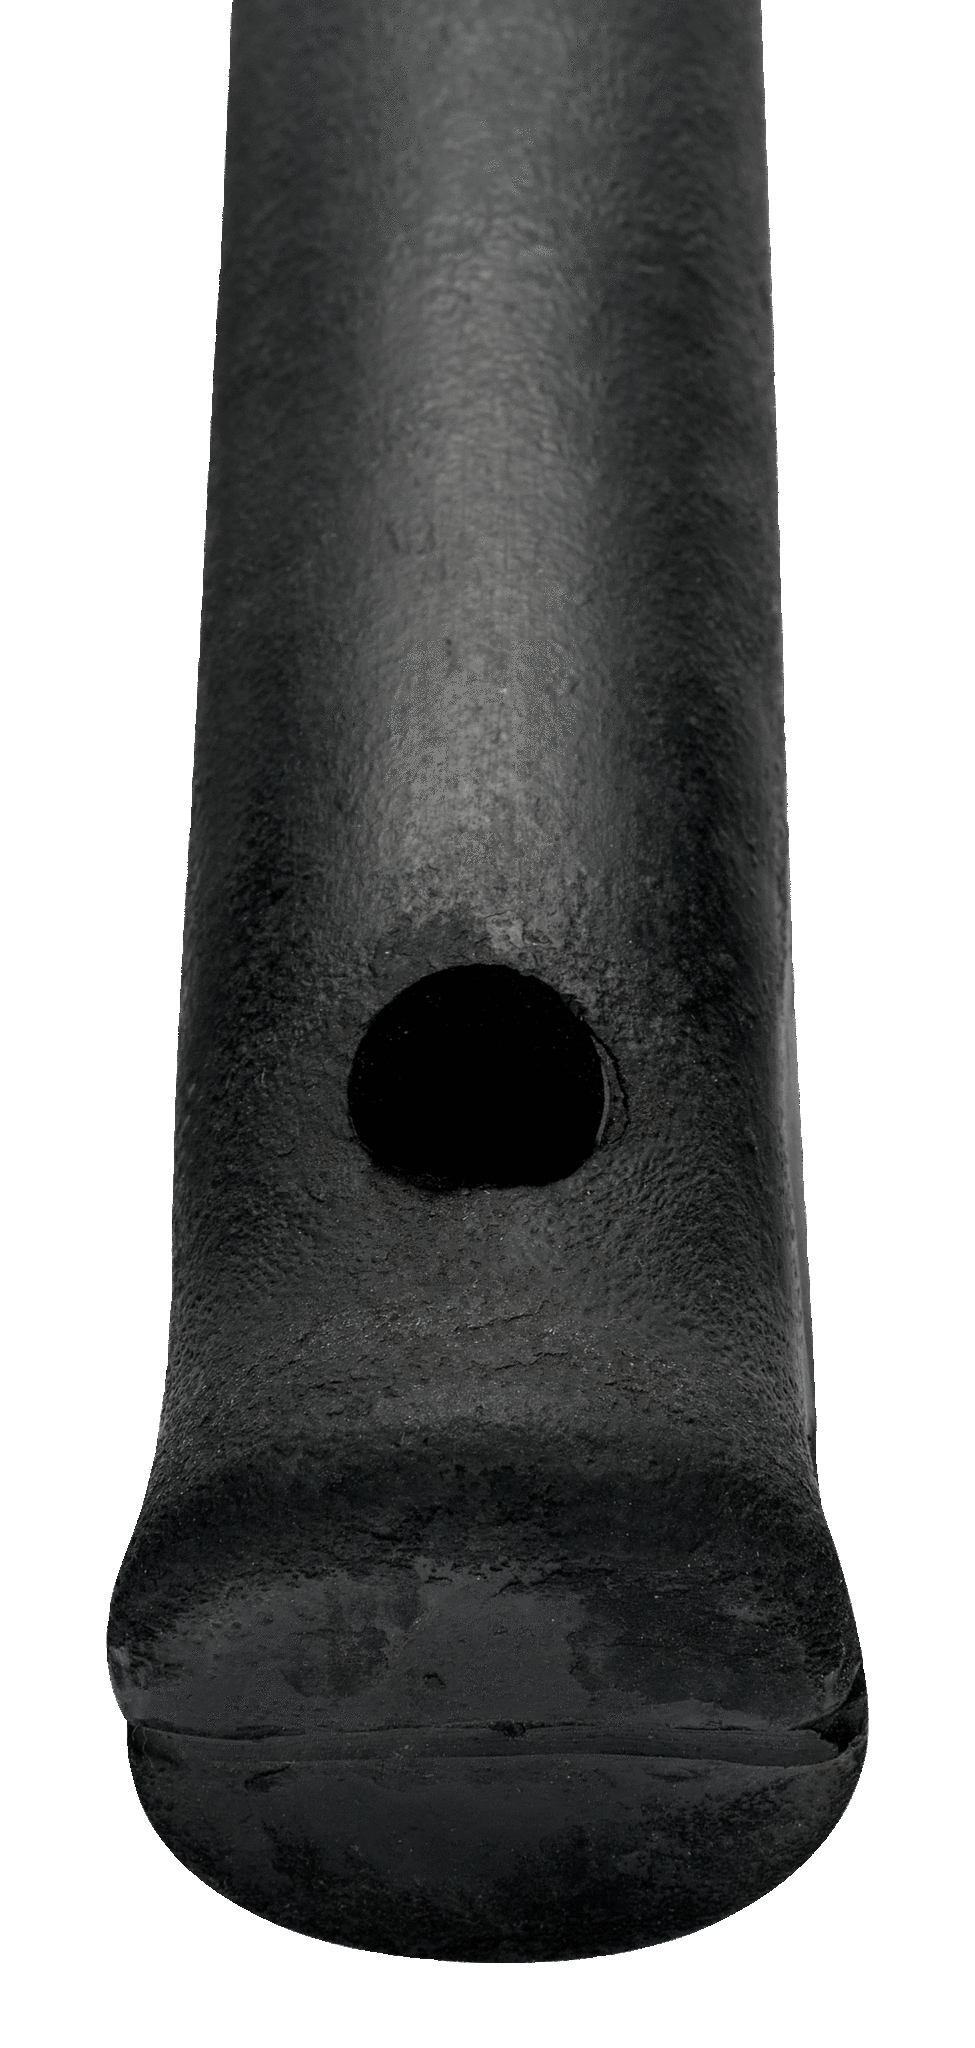 картинка Кувалда со слегка выпуклыми бойками, резиновая рукоятка, усиленная стальными стержнями BAHCO 489-1100 от магазина "Элит-инструмент"